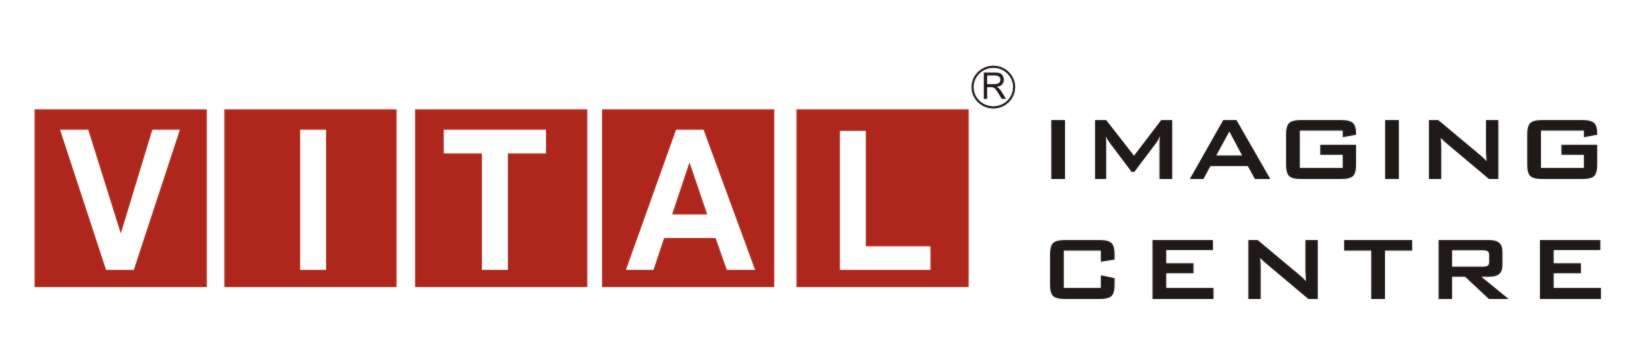 VITAL Imaging Centre Logo